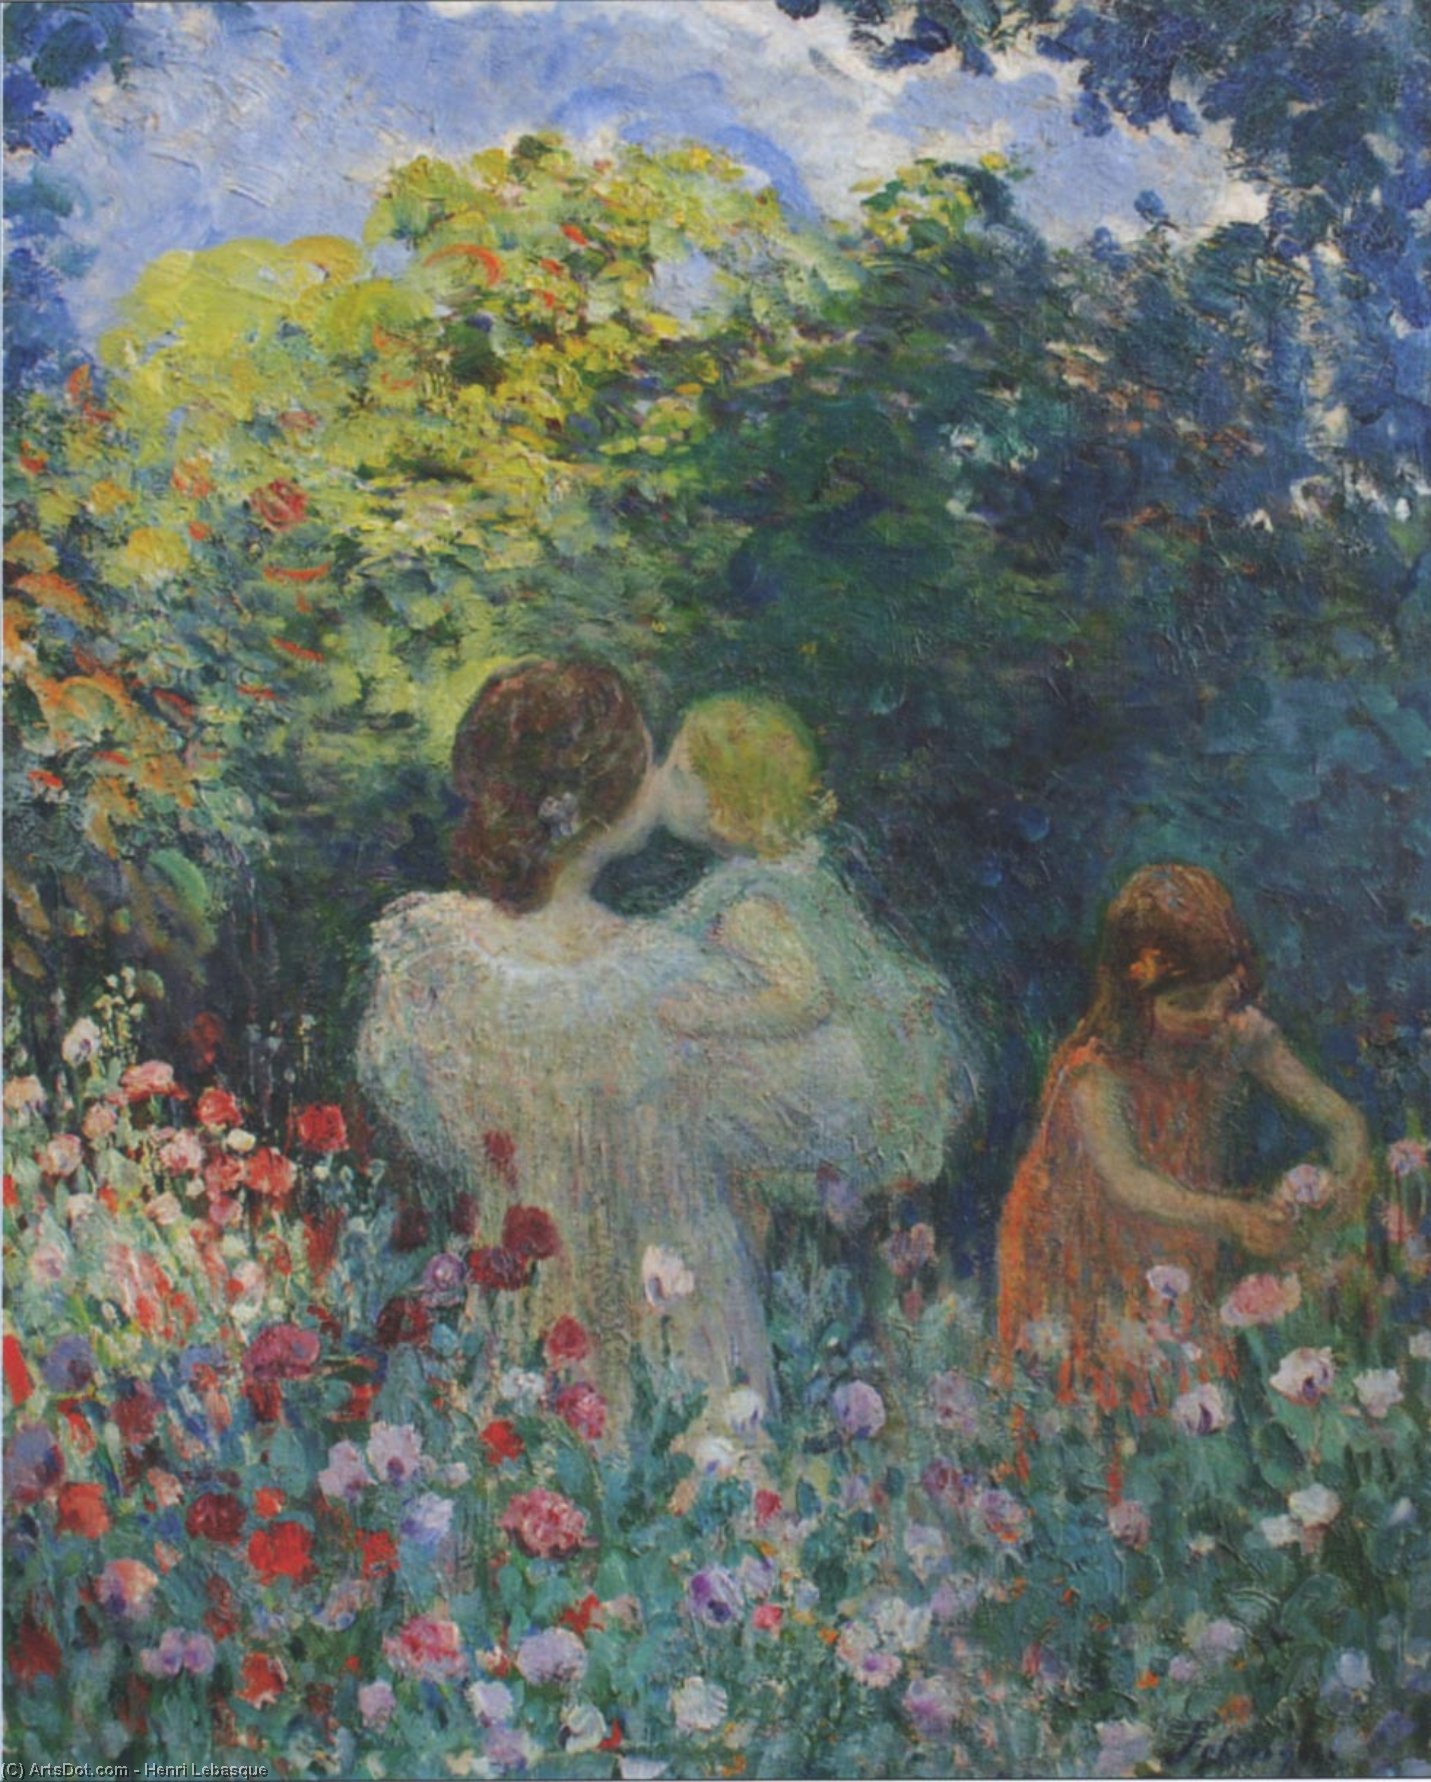 WikiOO.org - Encyclopedia of Fine Arts - Festés, Grafika Henri Lebasque - In the Flowers